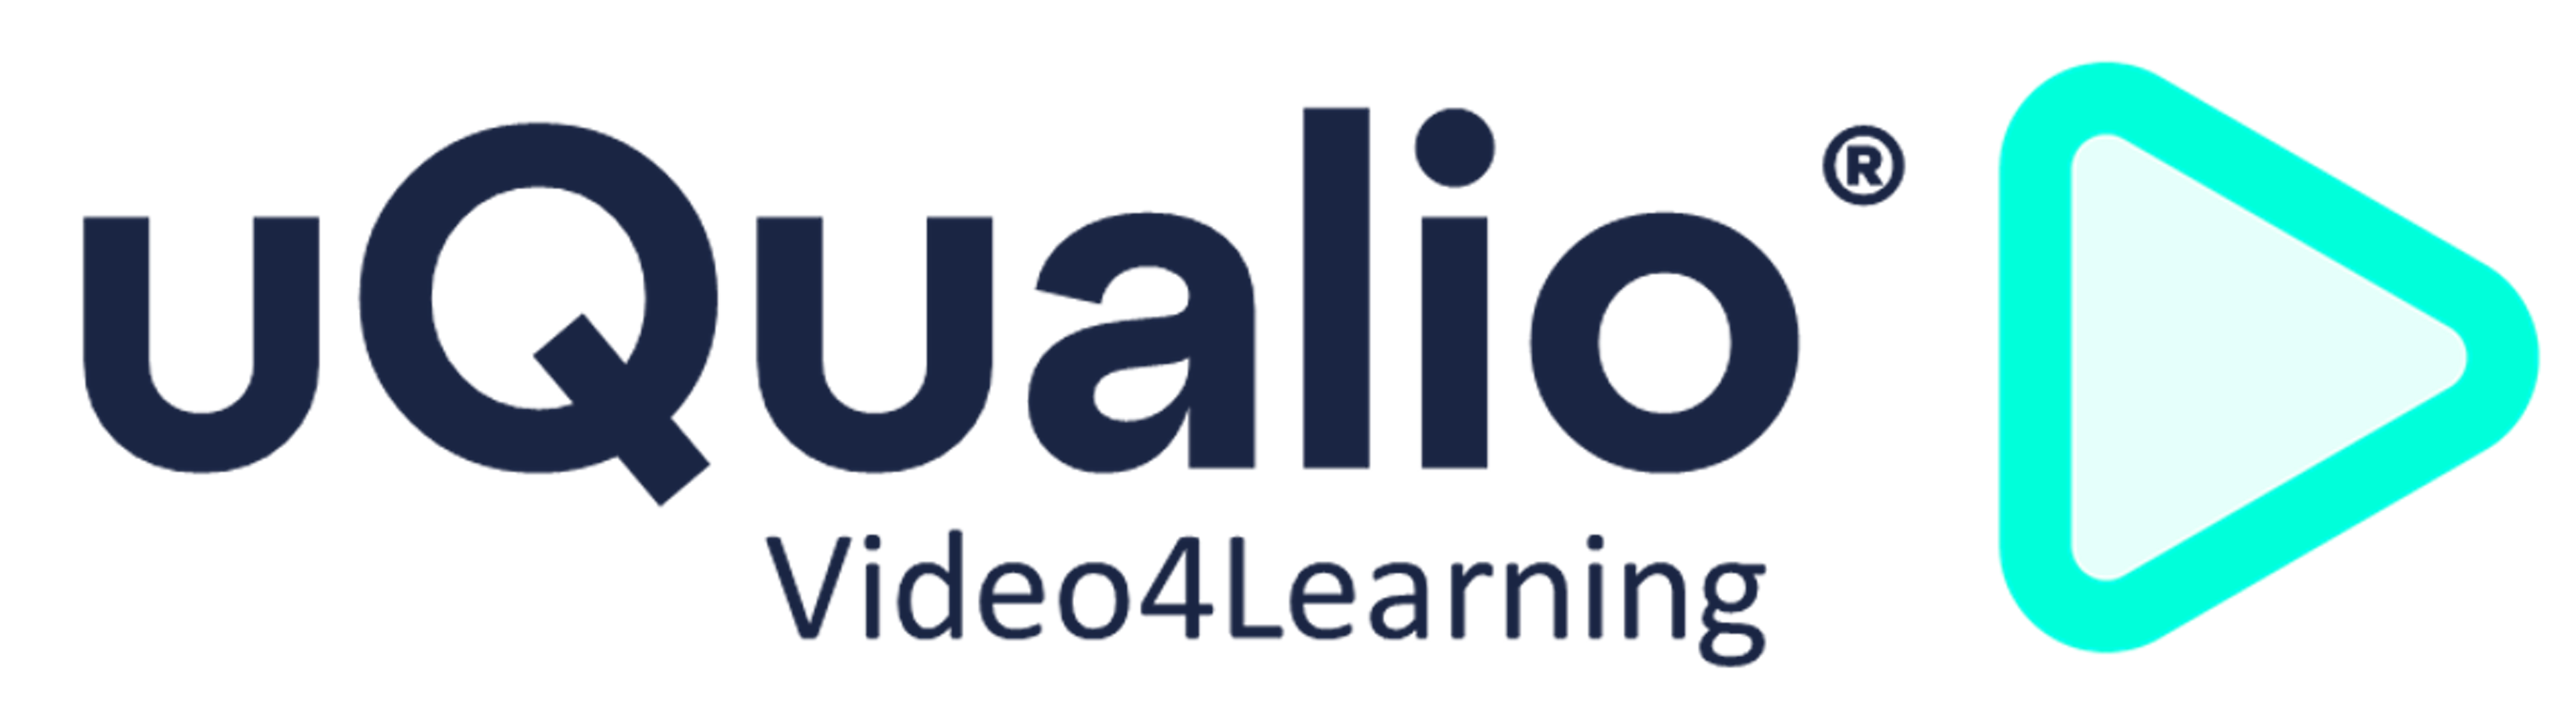 uQualio Logo